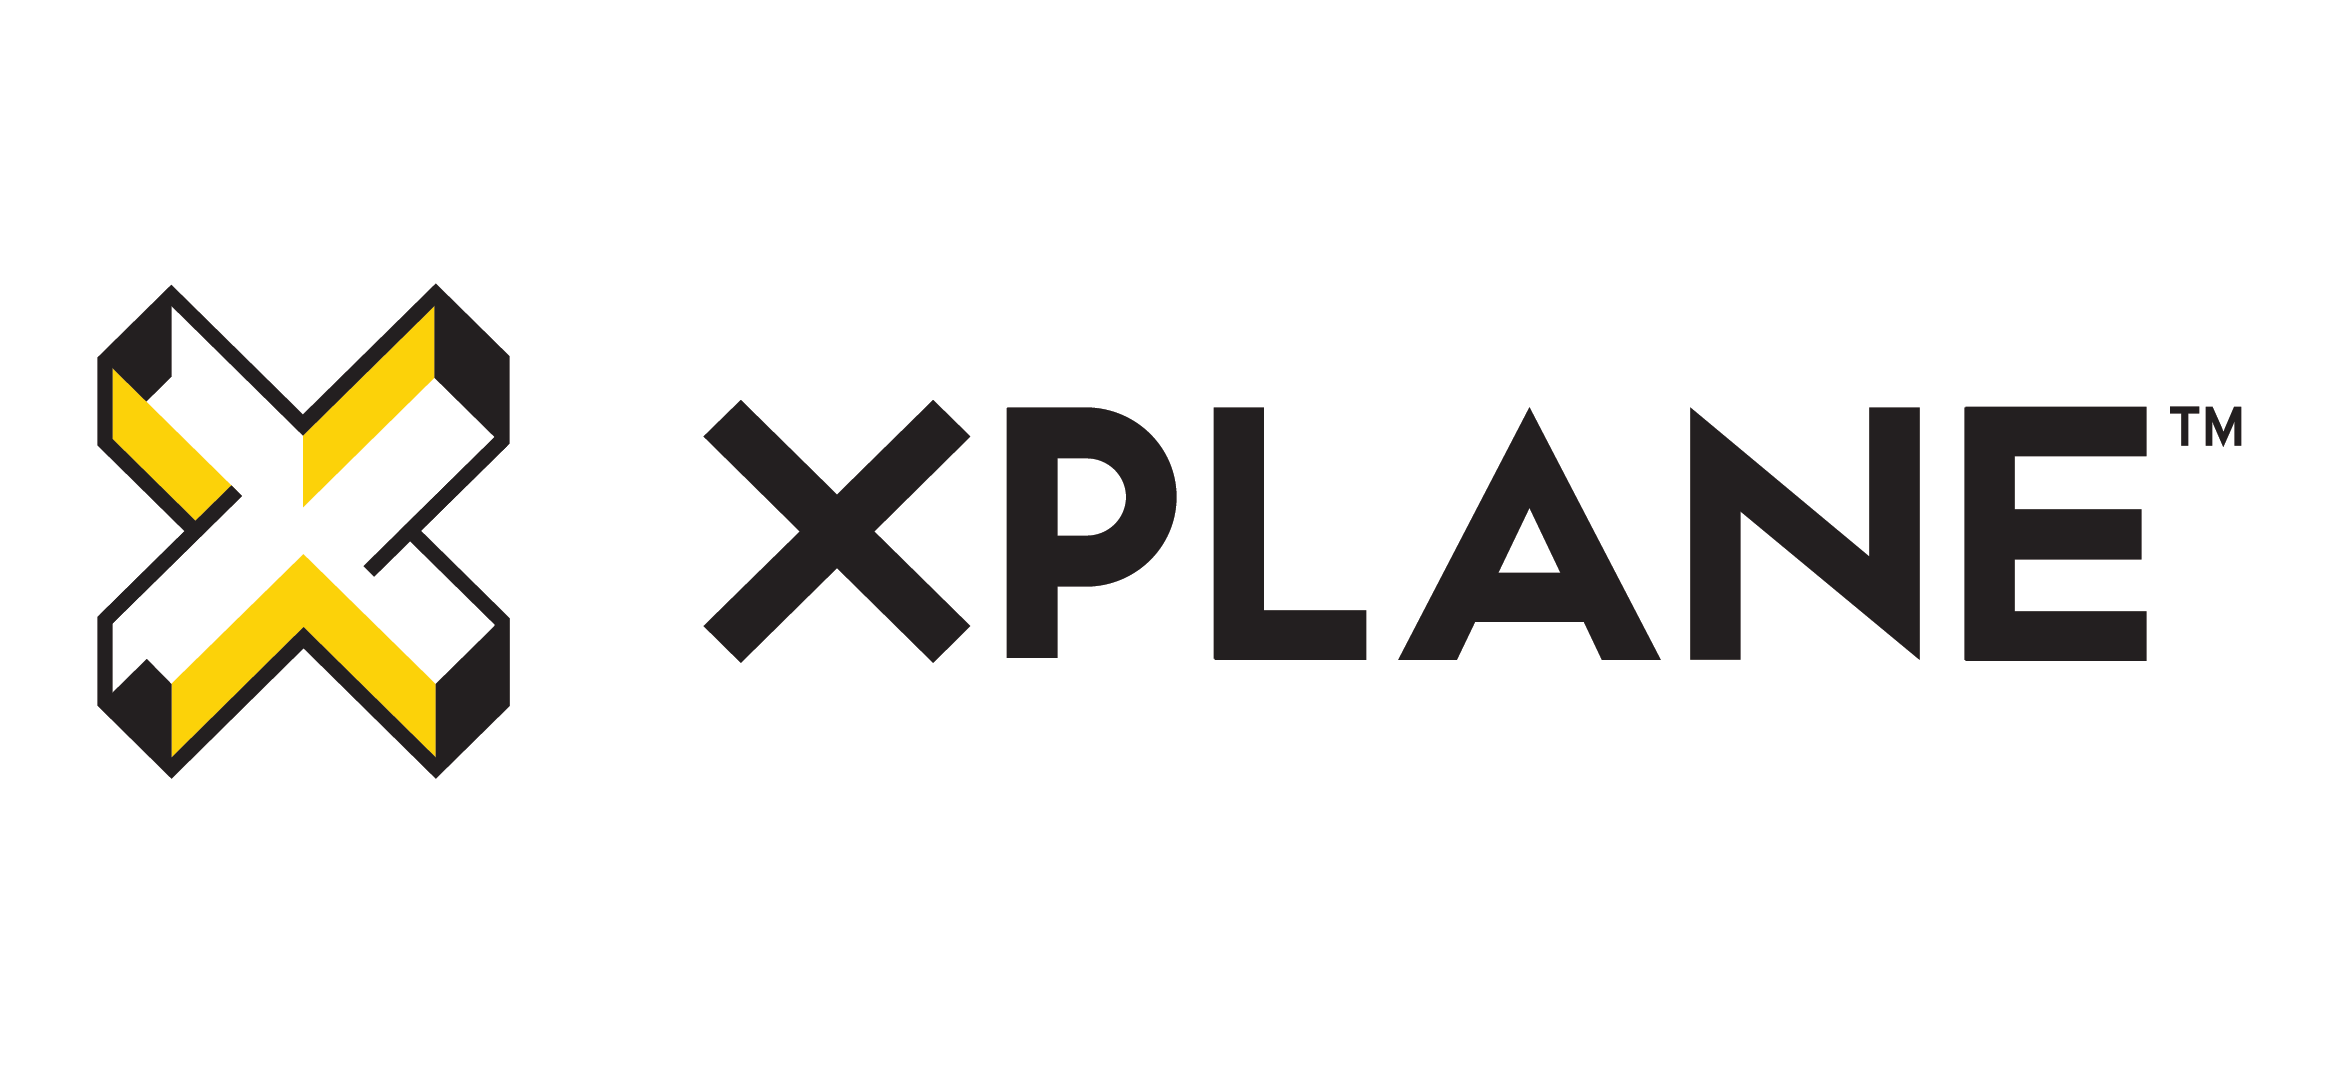 XPLANE_logo